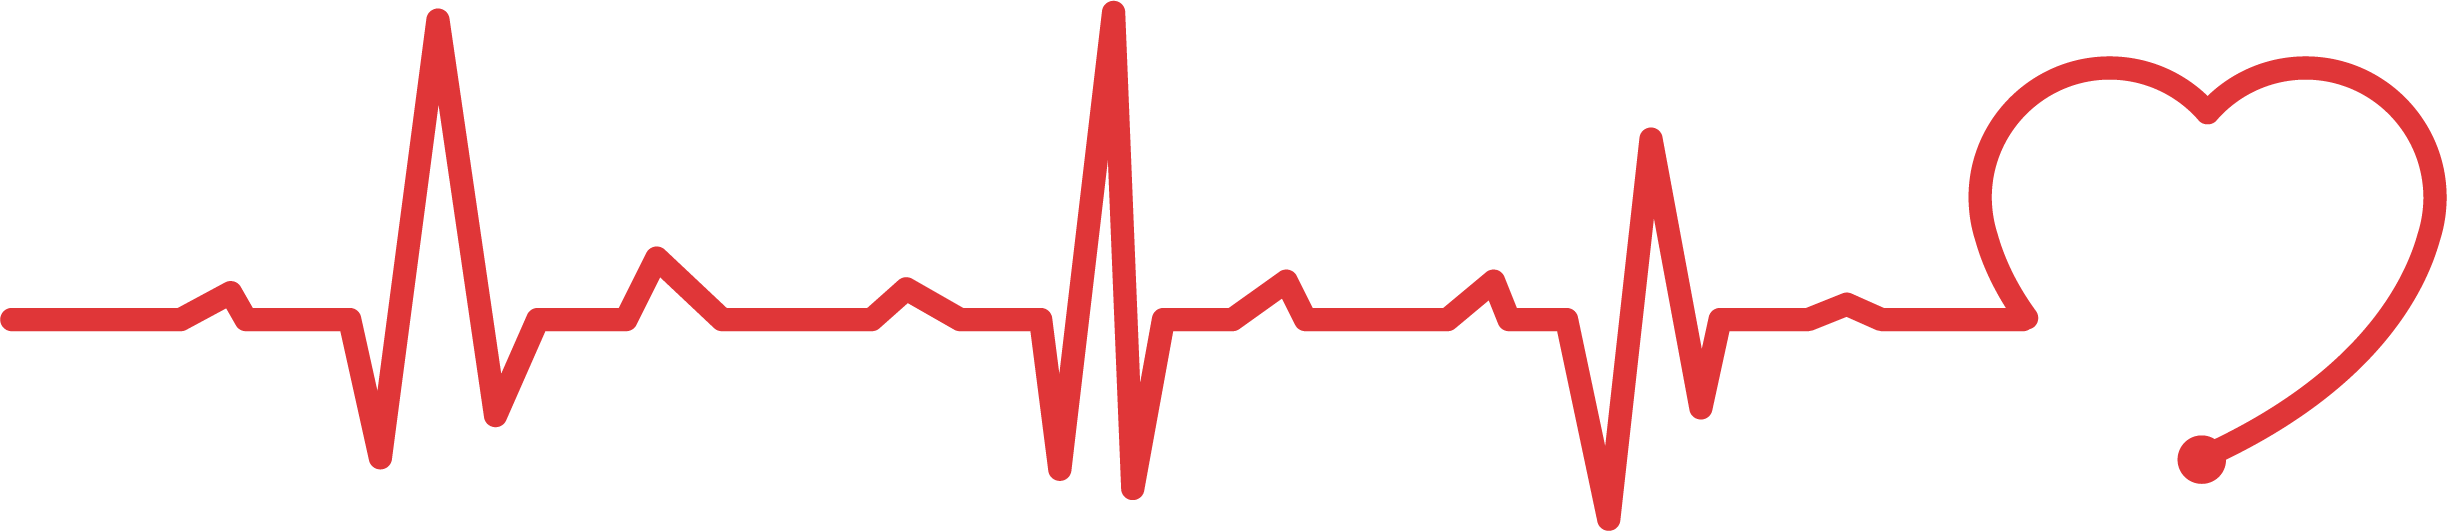 Heartbeat ECG imagen Transparente